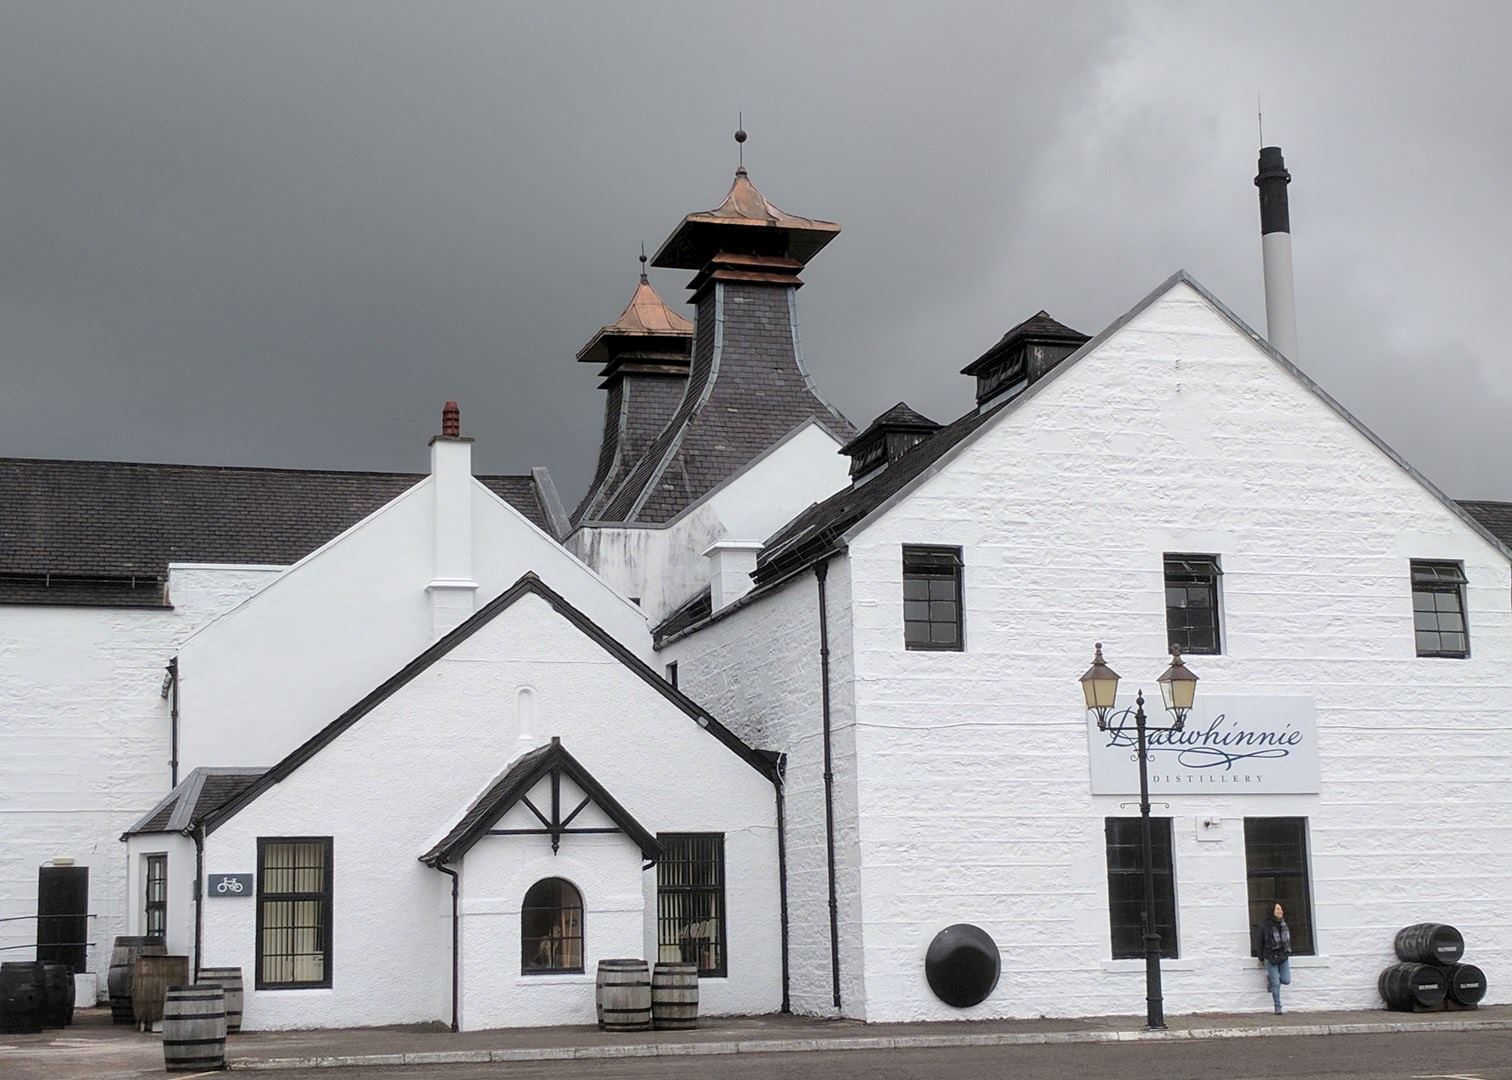 dalwhinnie distillery tour scotland